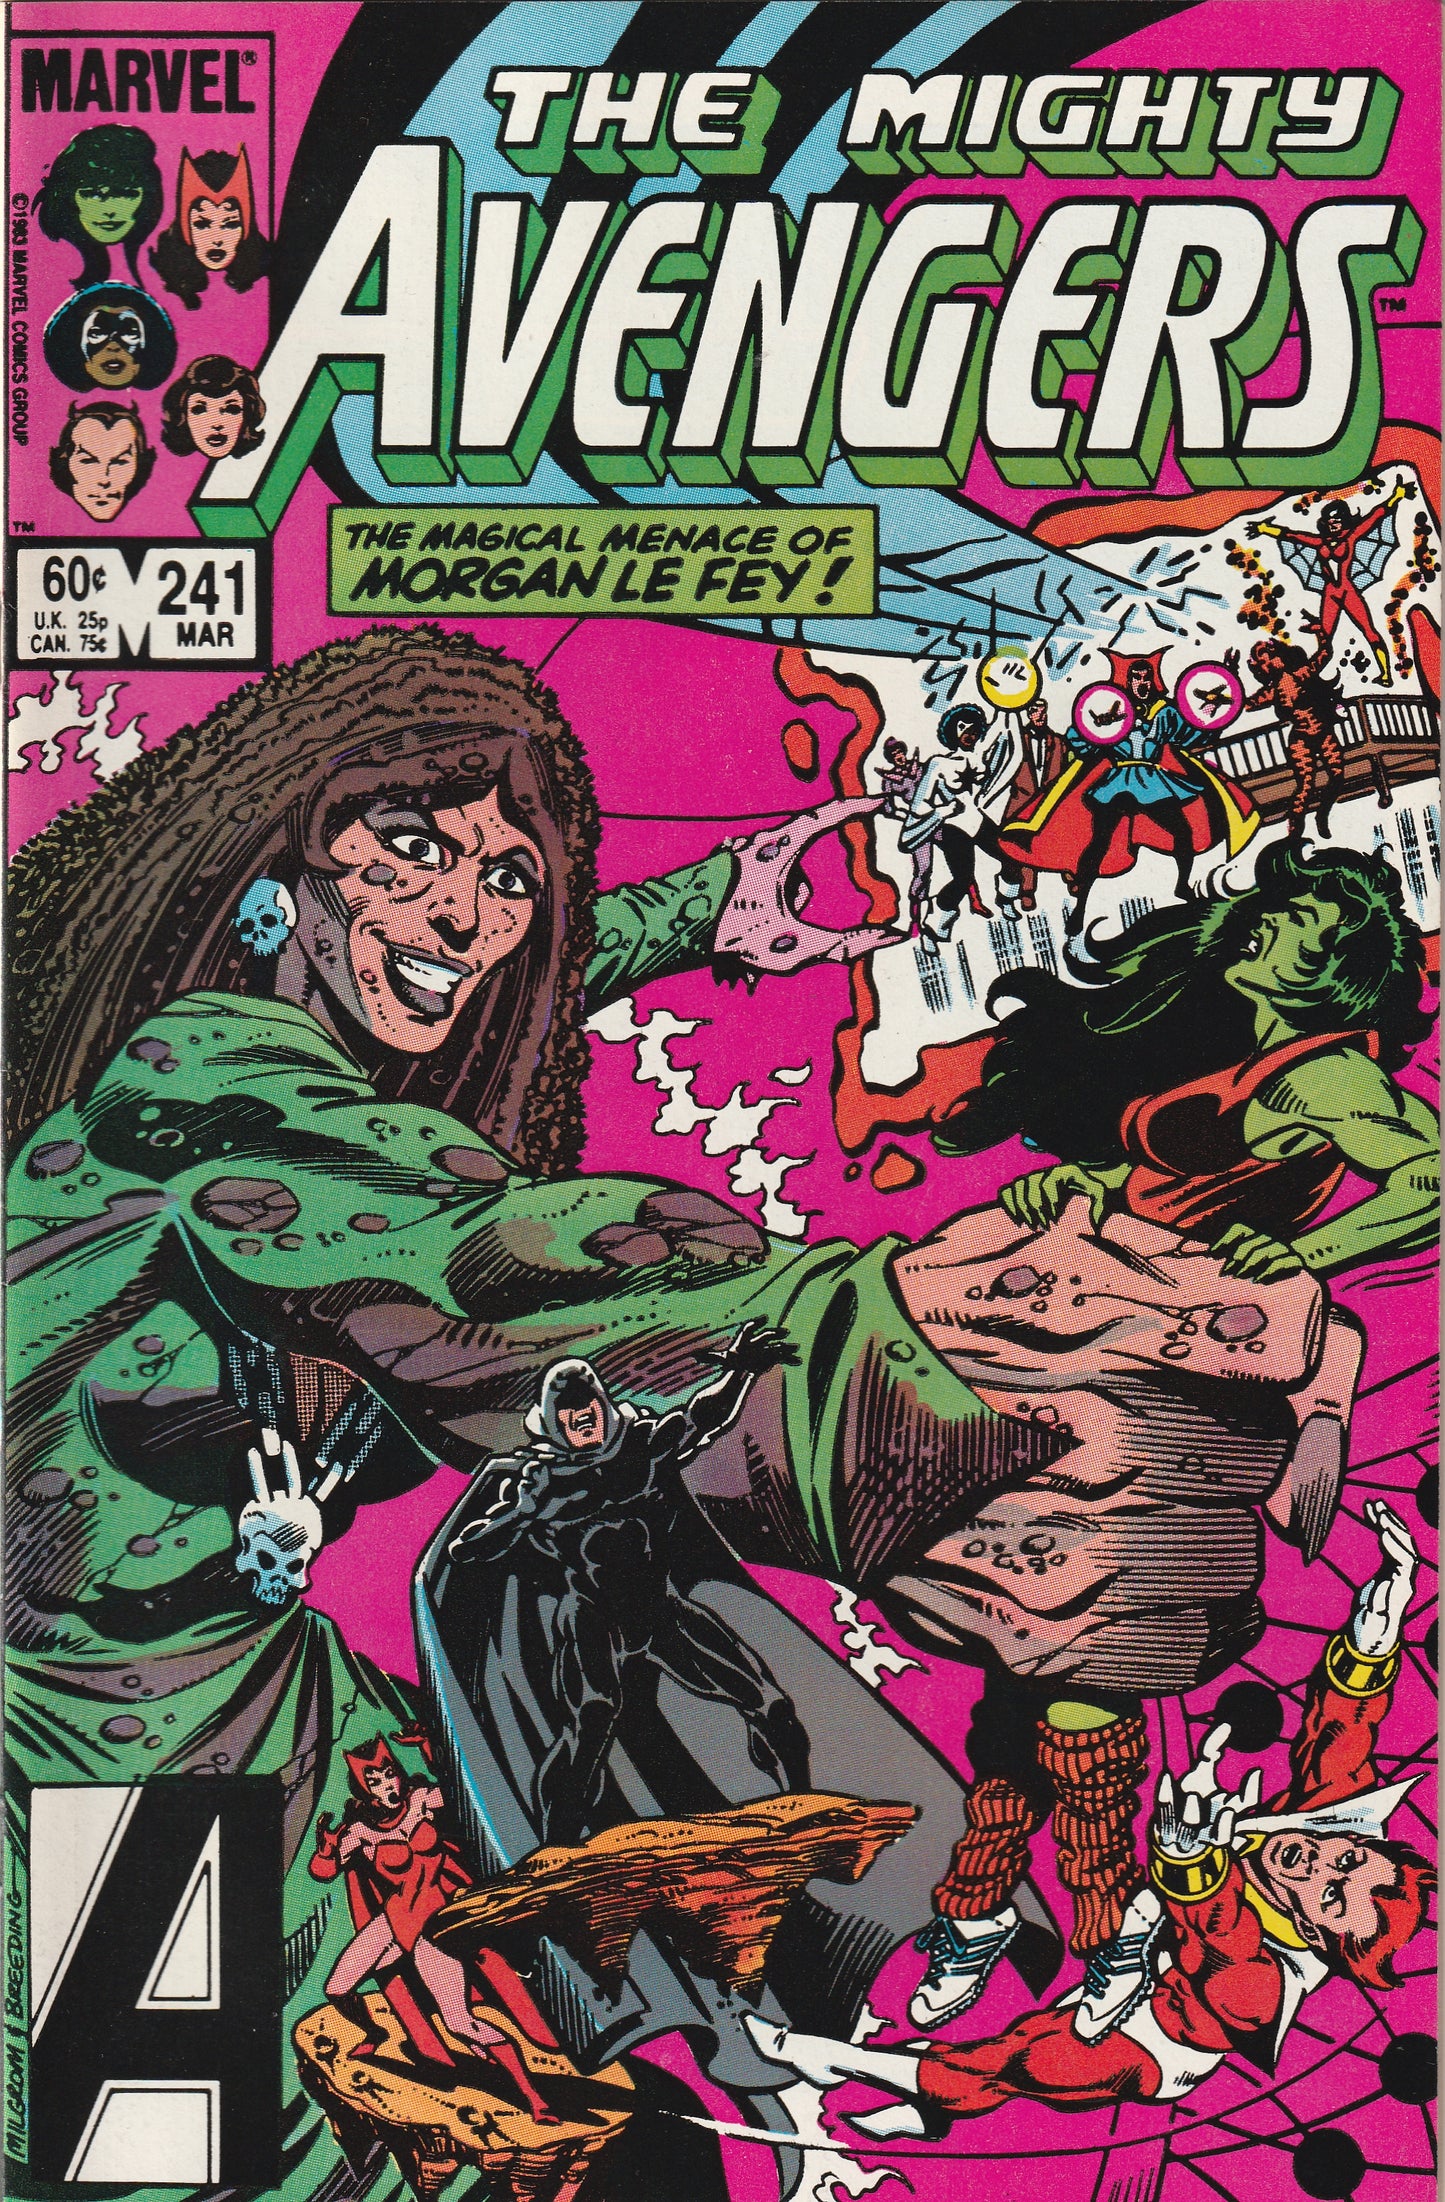 Avengers #241 (1984) - Morgan Le Fey Appearance